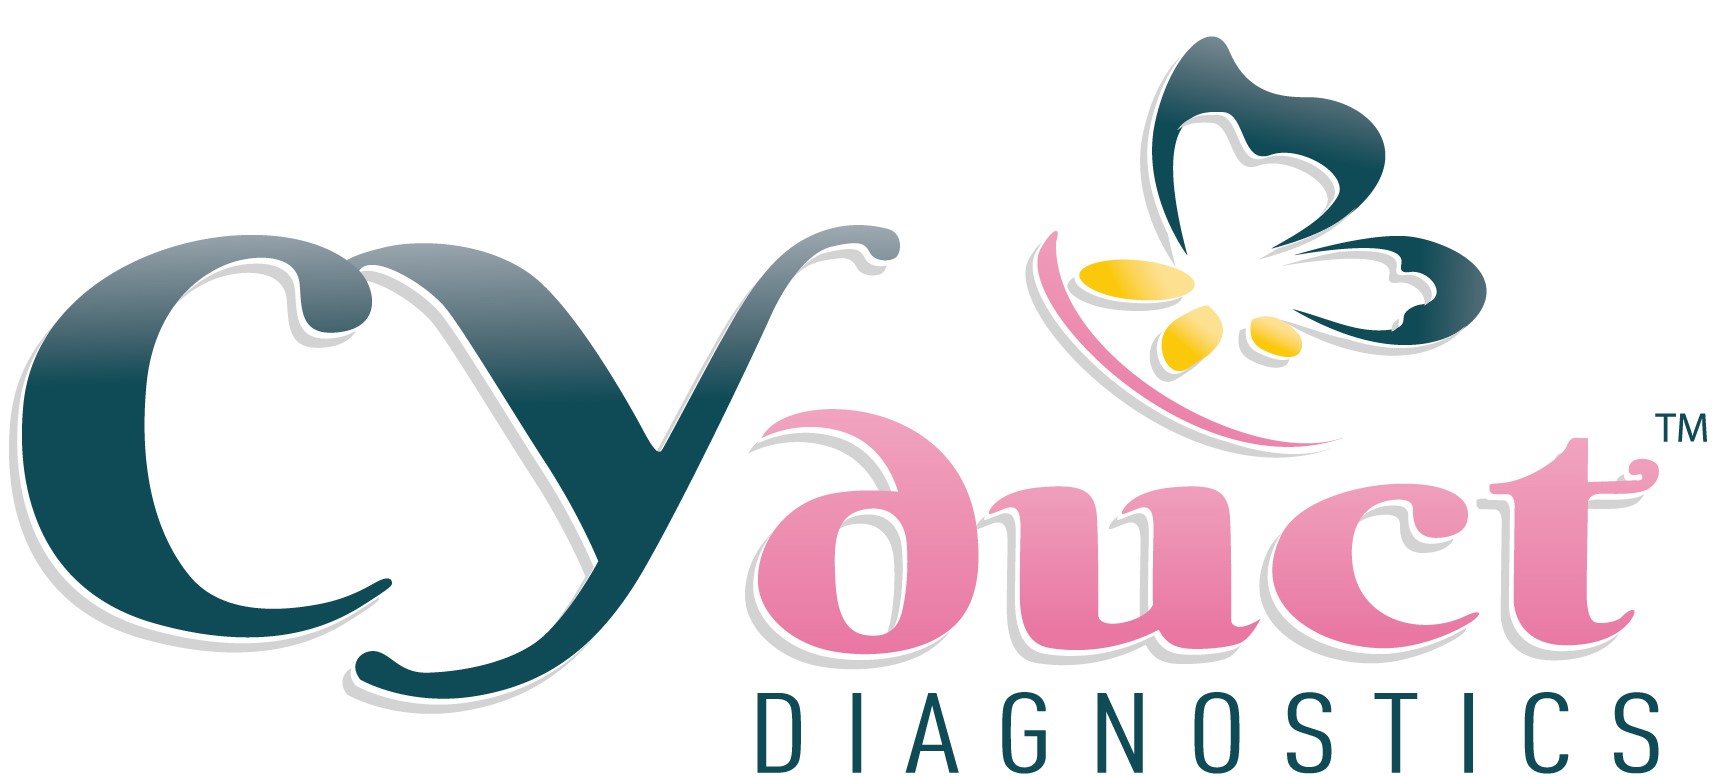 CYduct Diagnostics, Inc.